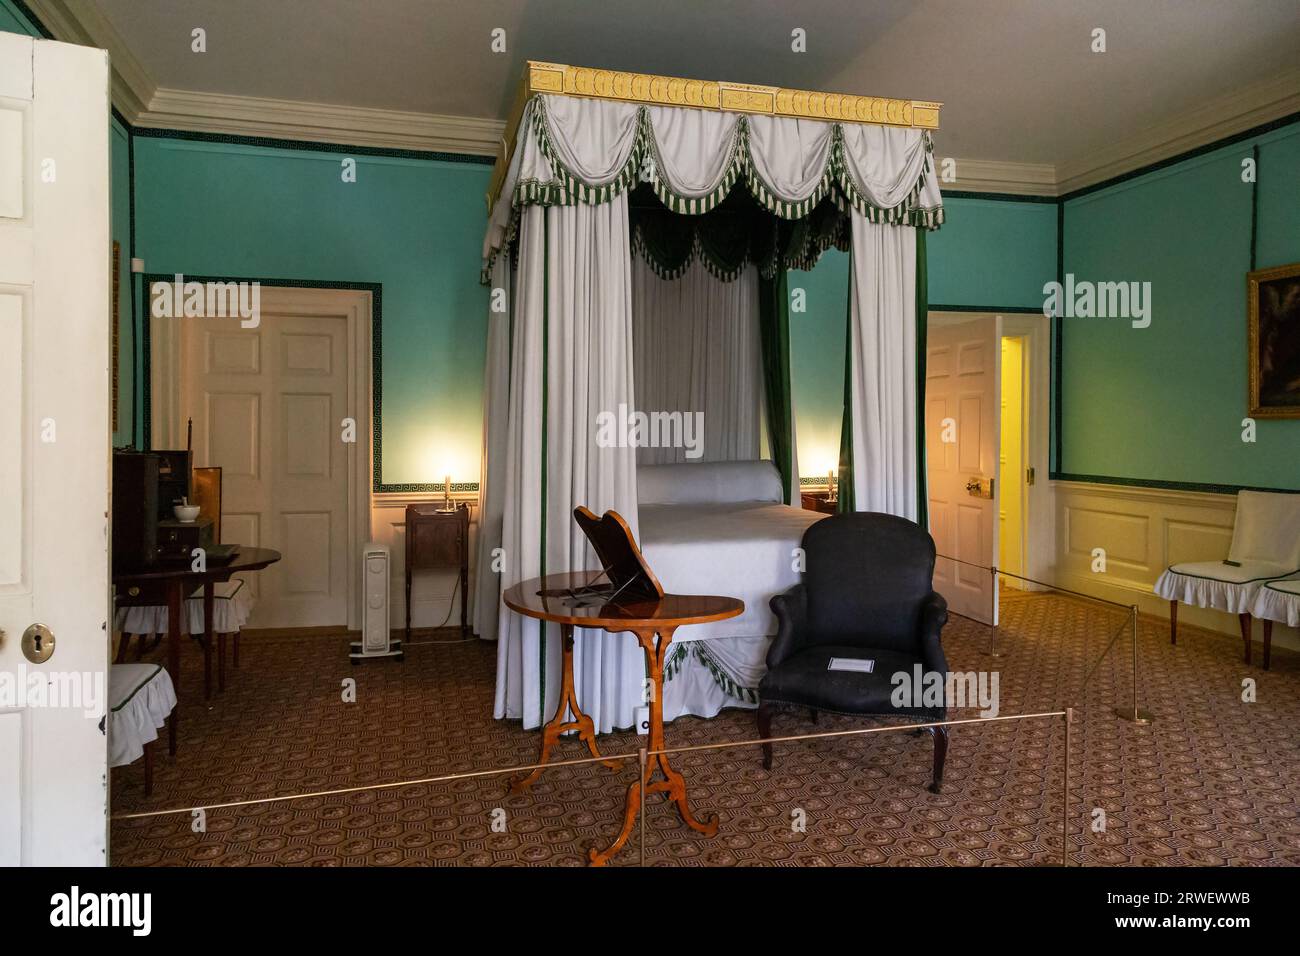 LONDON, GROSSBRITANNIEN - 17. SEPTEMBER 2014: Hier befindet sich eines der Schlafzimmer des kleinen königlichen Kew Palace aus dem 18. Jahrhundert in Kew Gard Stockfoto